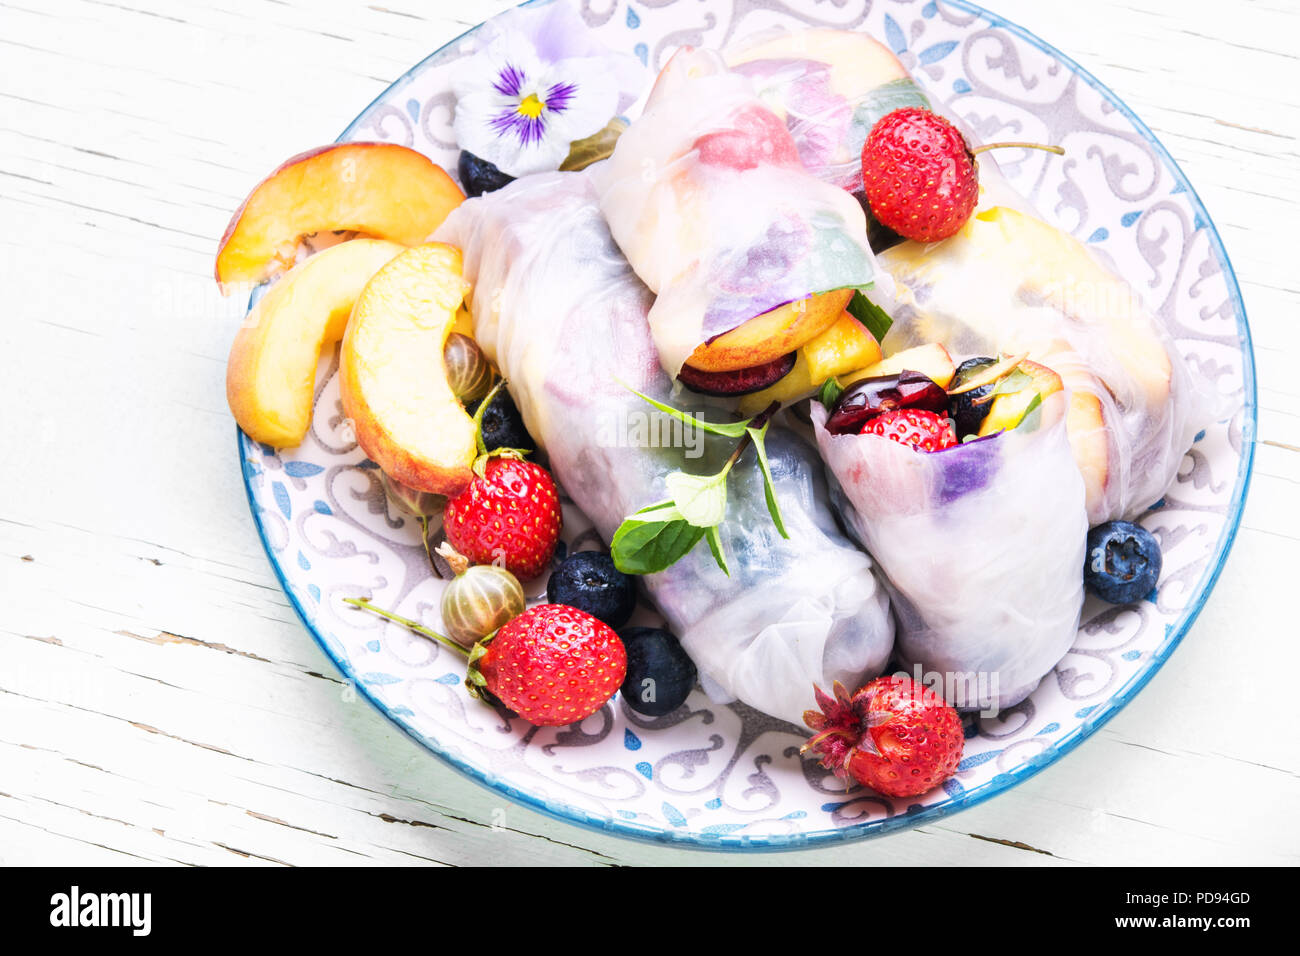 Un assortiment de pains frais d'été japonais ensemble avec des fruits.nourriture Vegan Banque D'Images